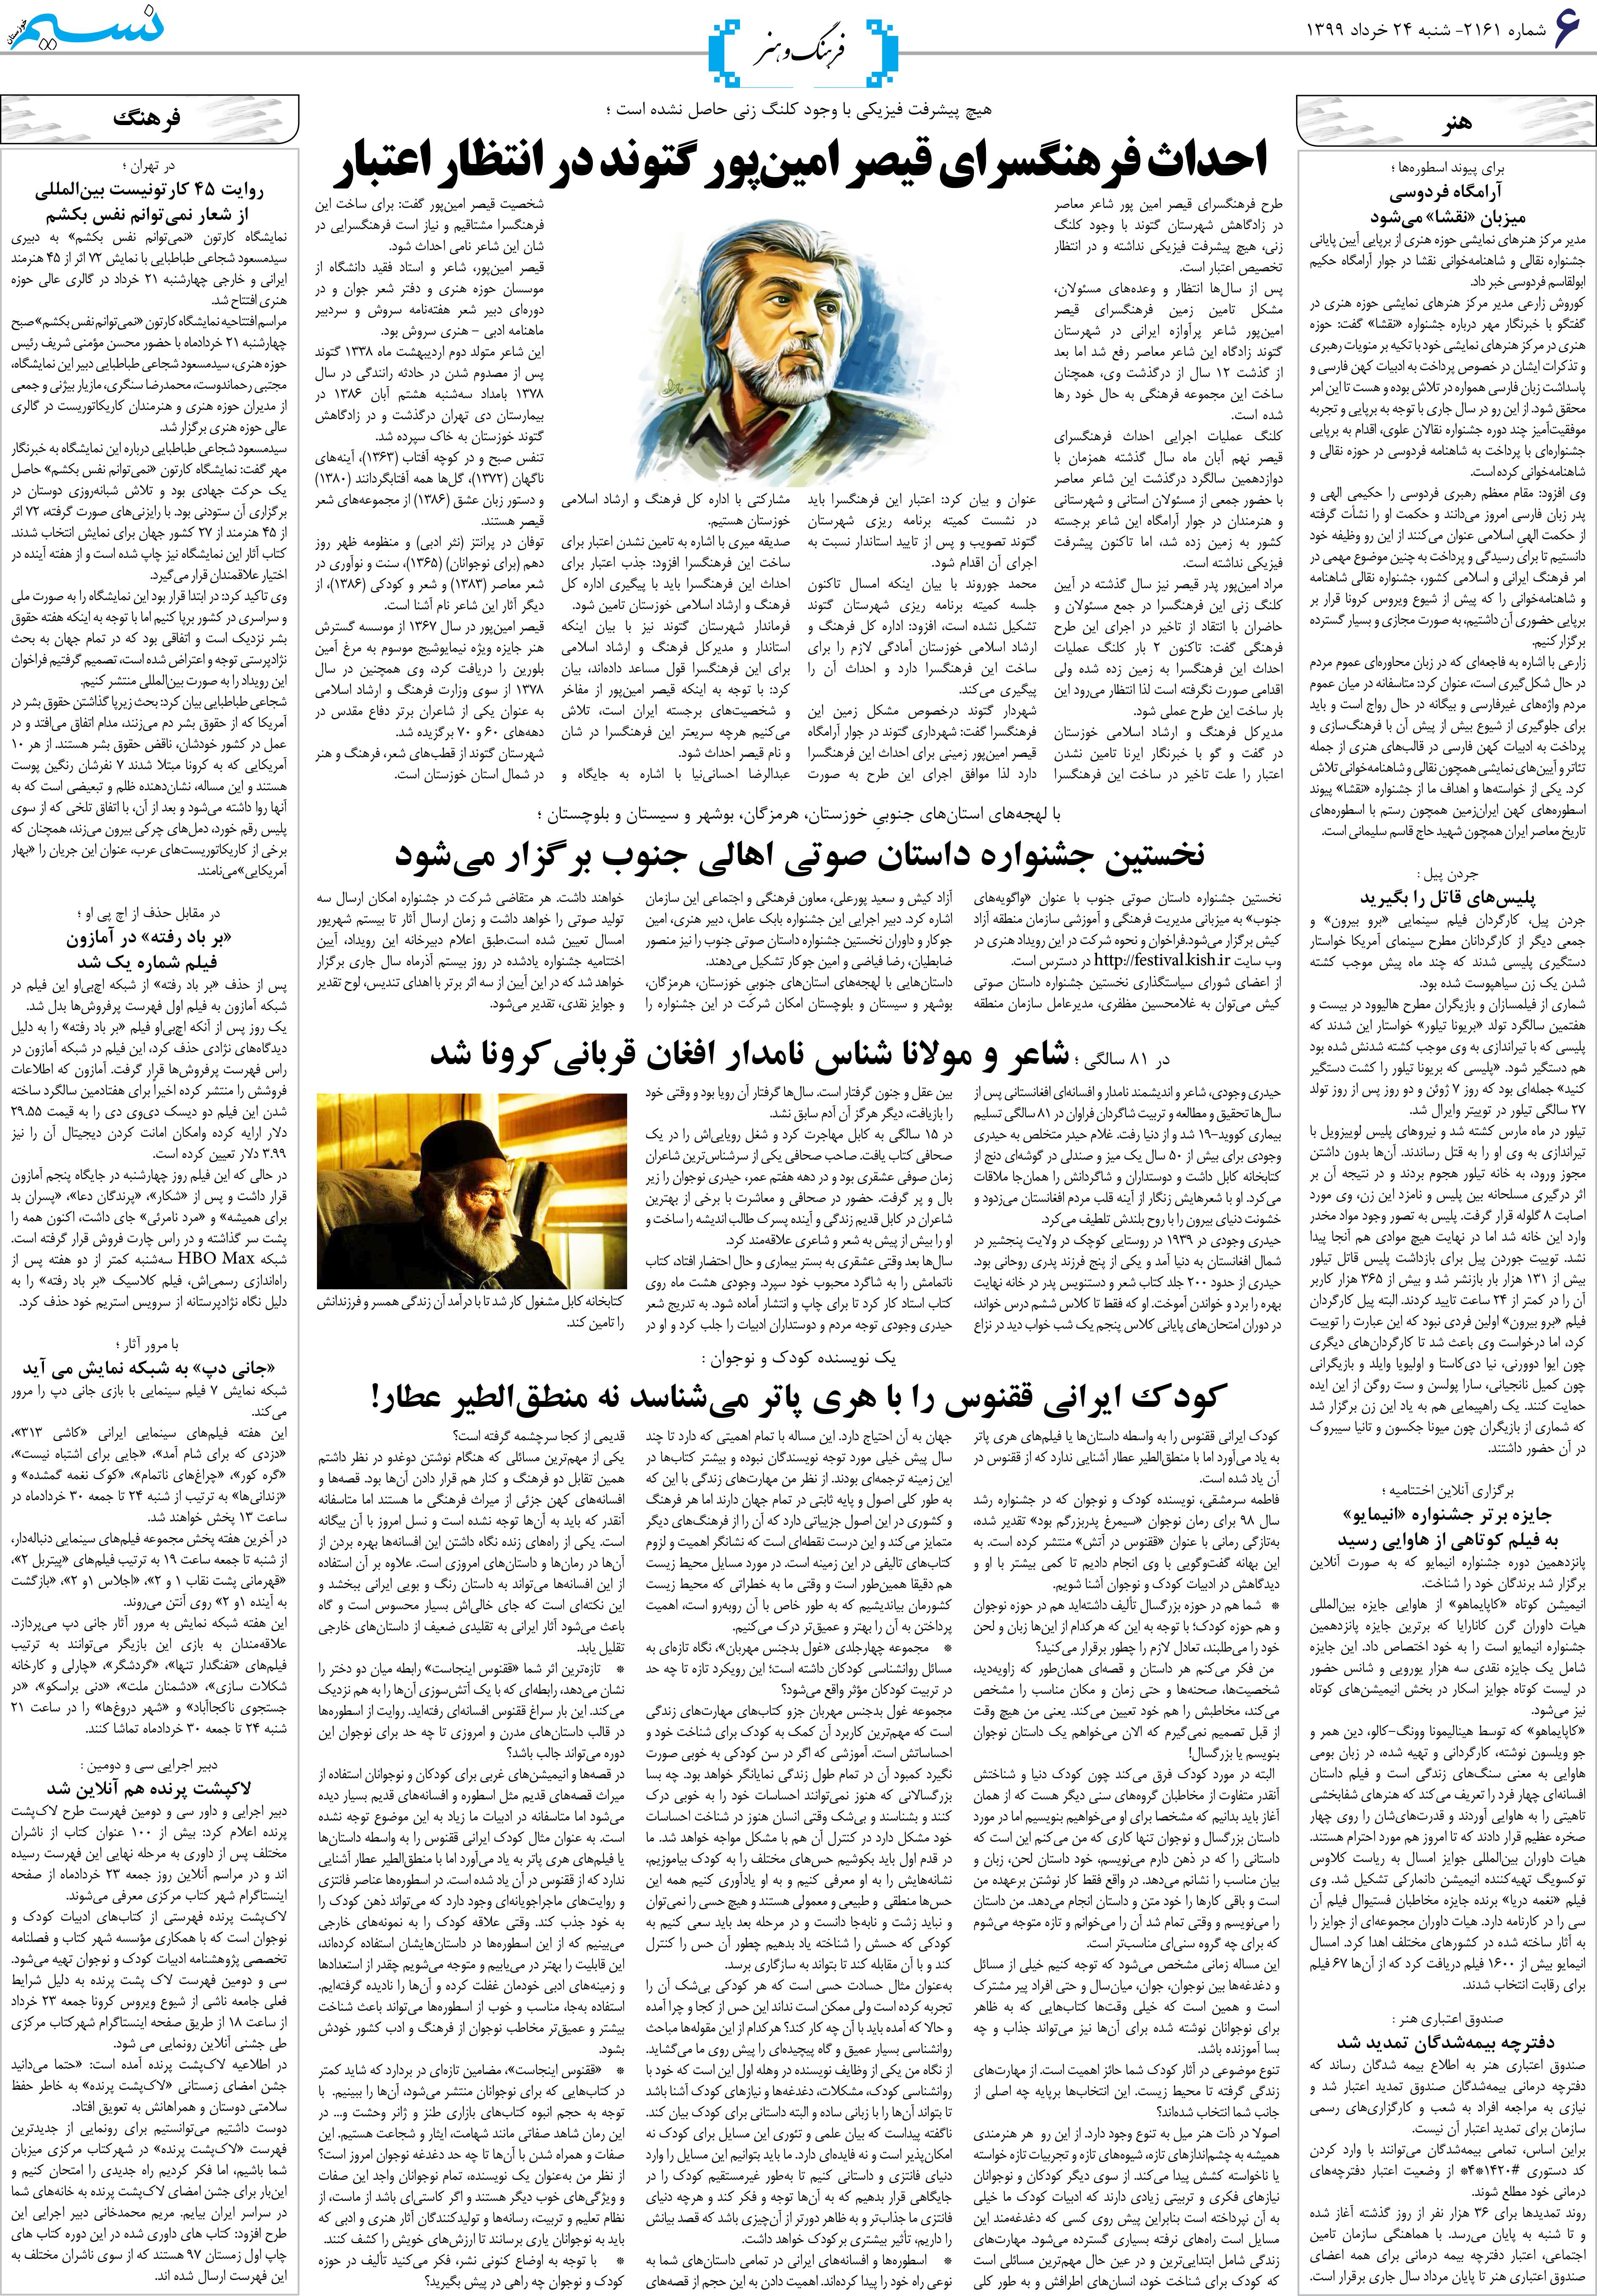 صفحه فرهنگ و هنر روزنامه نسیم شماره 2161